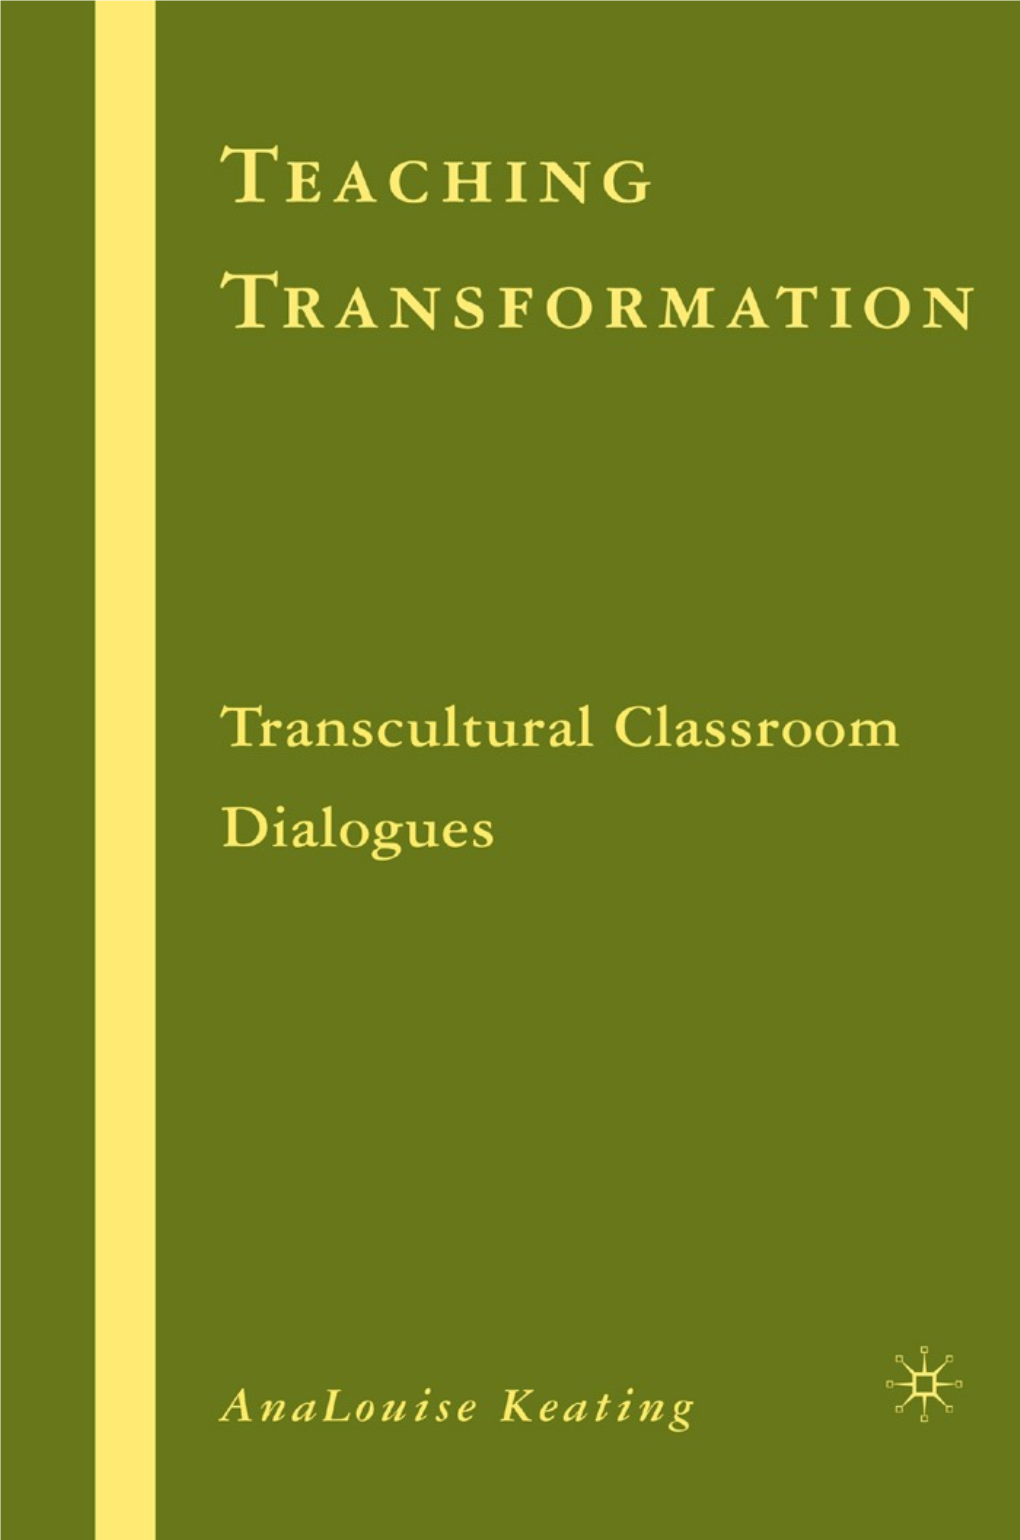 [Reference] Analouise Keating: Teaching Transformation